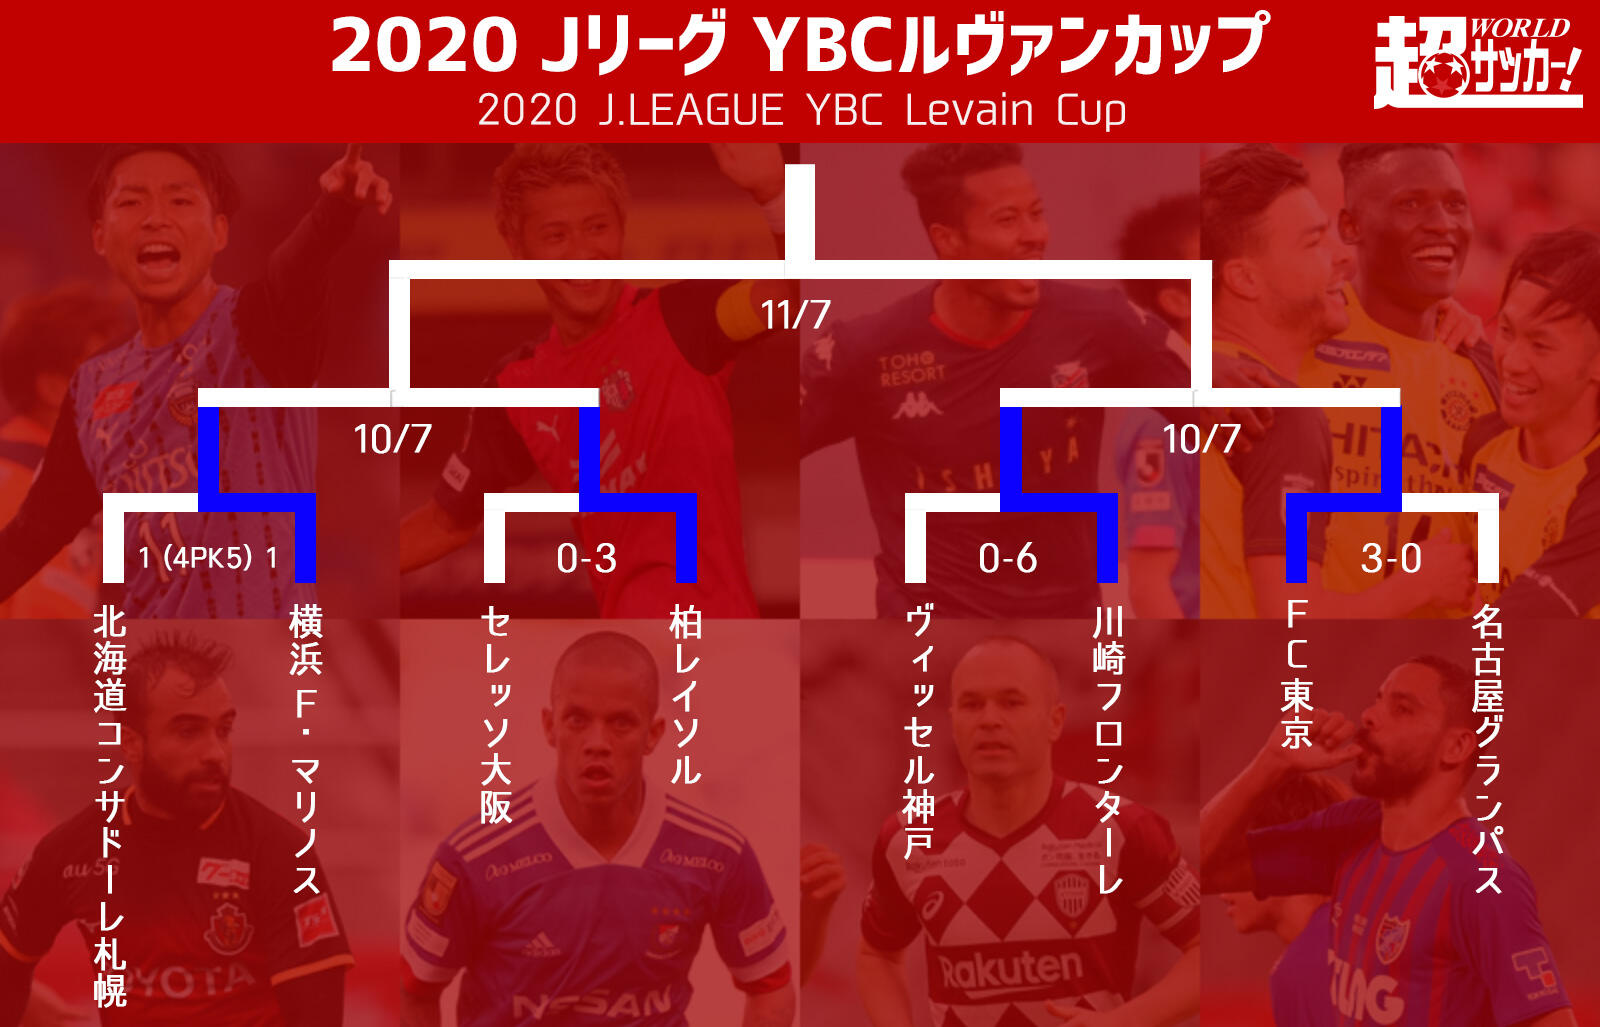 ベスト4が決定 川崎fとfc東京の 多摩川クラシコ が実現 Ybcルヴァンカップ 超ワールドサッカー